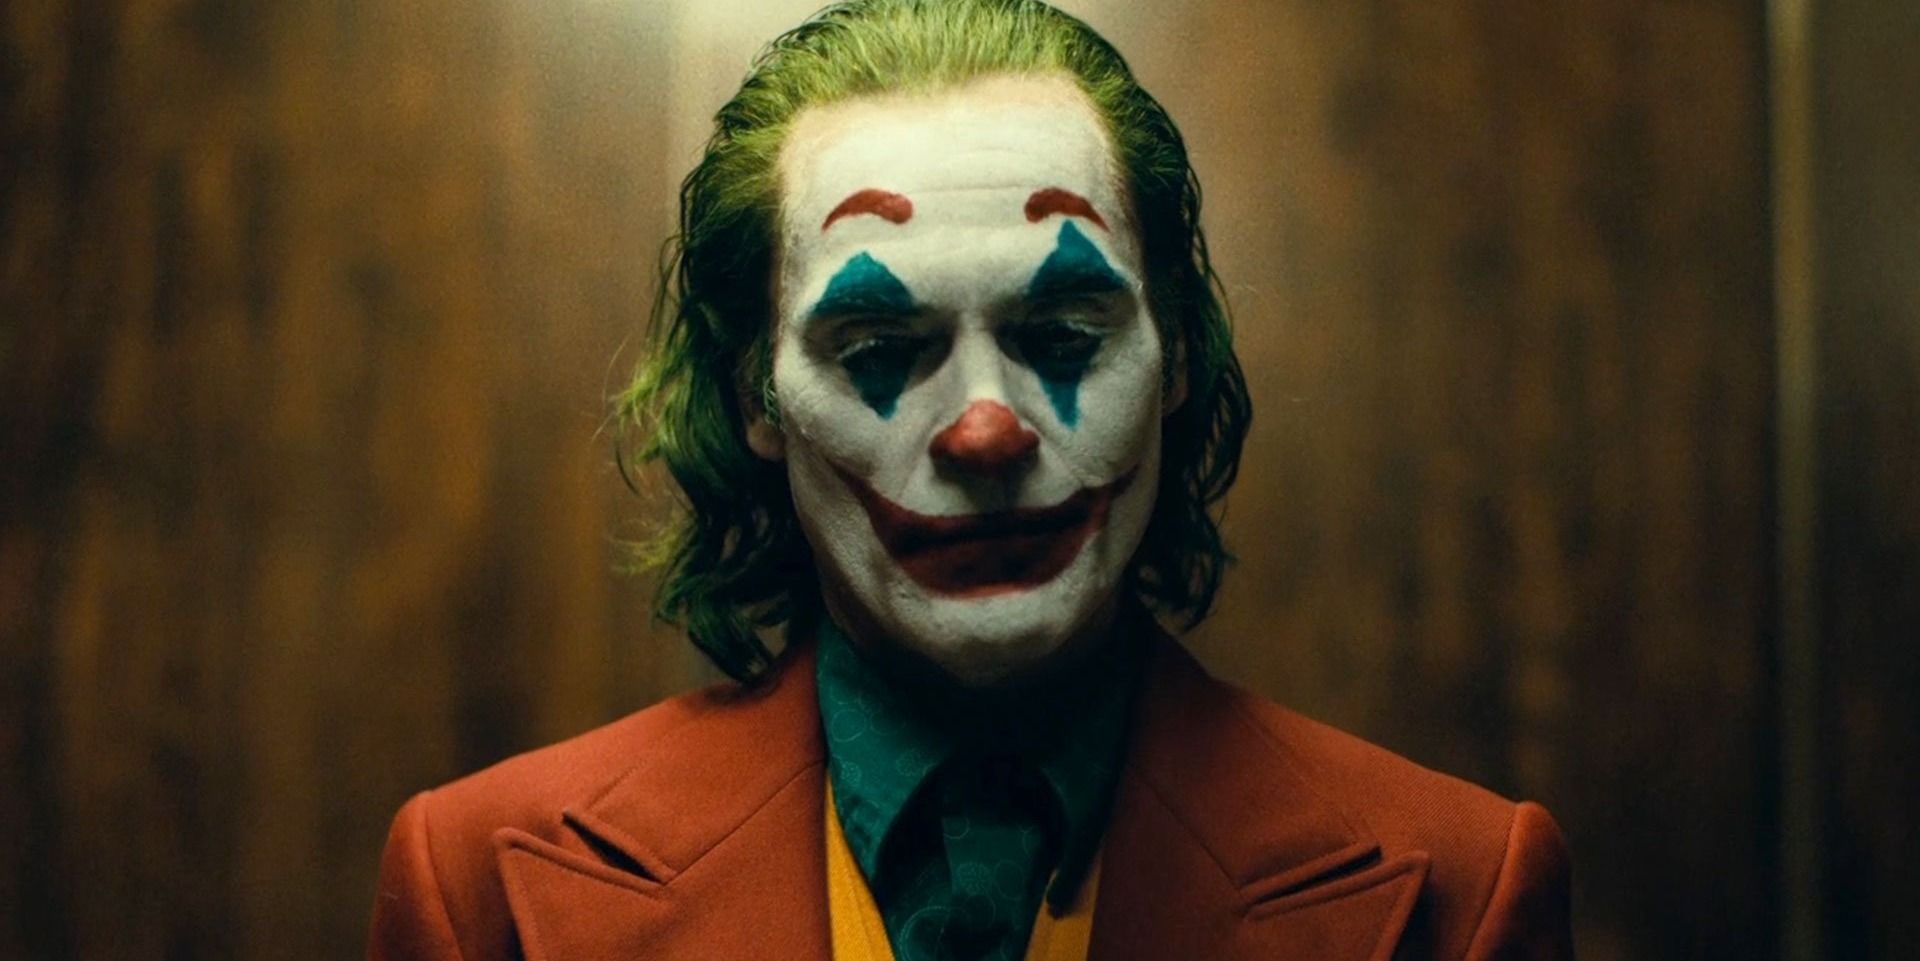 Tanggal Rilis Digital dan Blu-ray Joker Terungkap